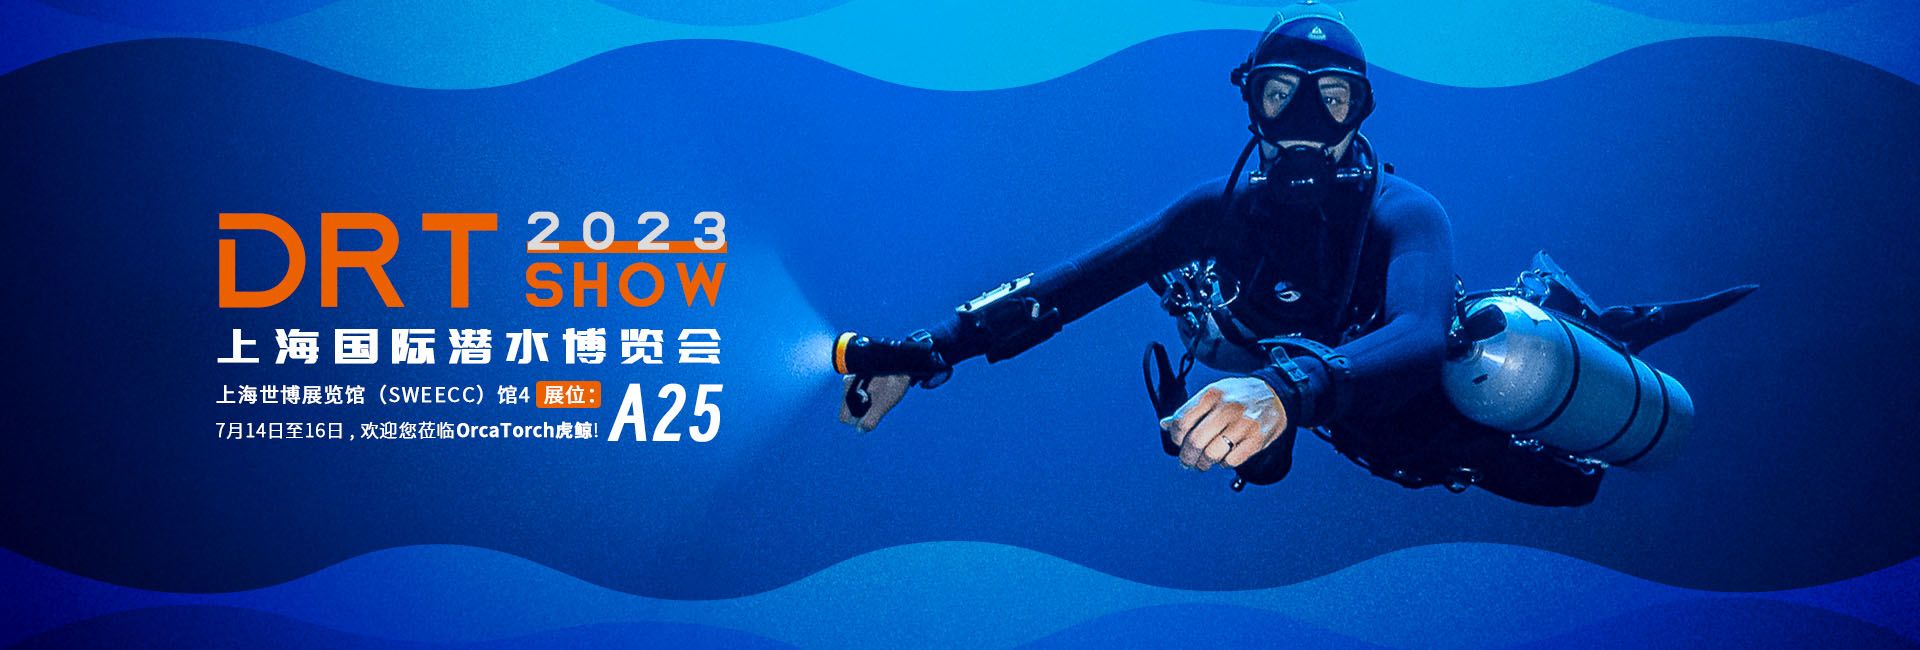 2023 DRT SHOW上海国际潜水展